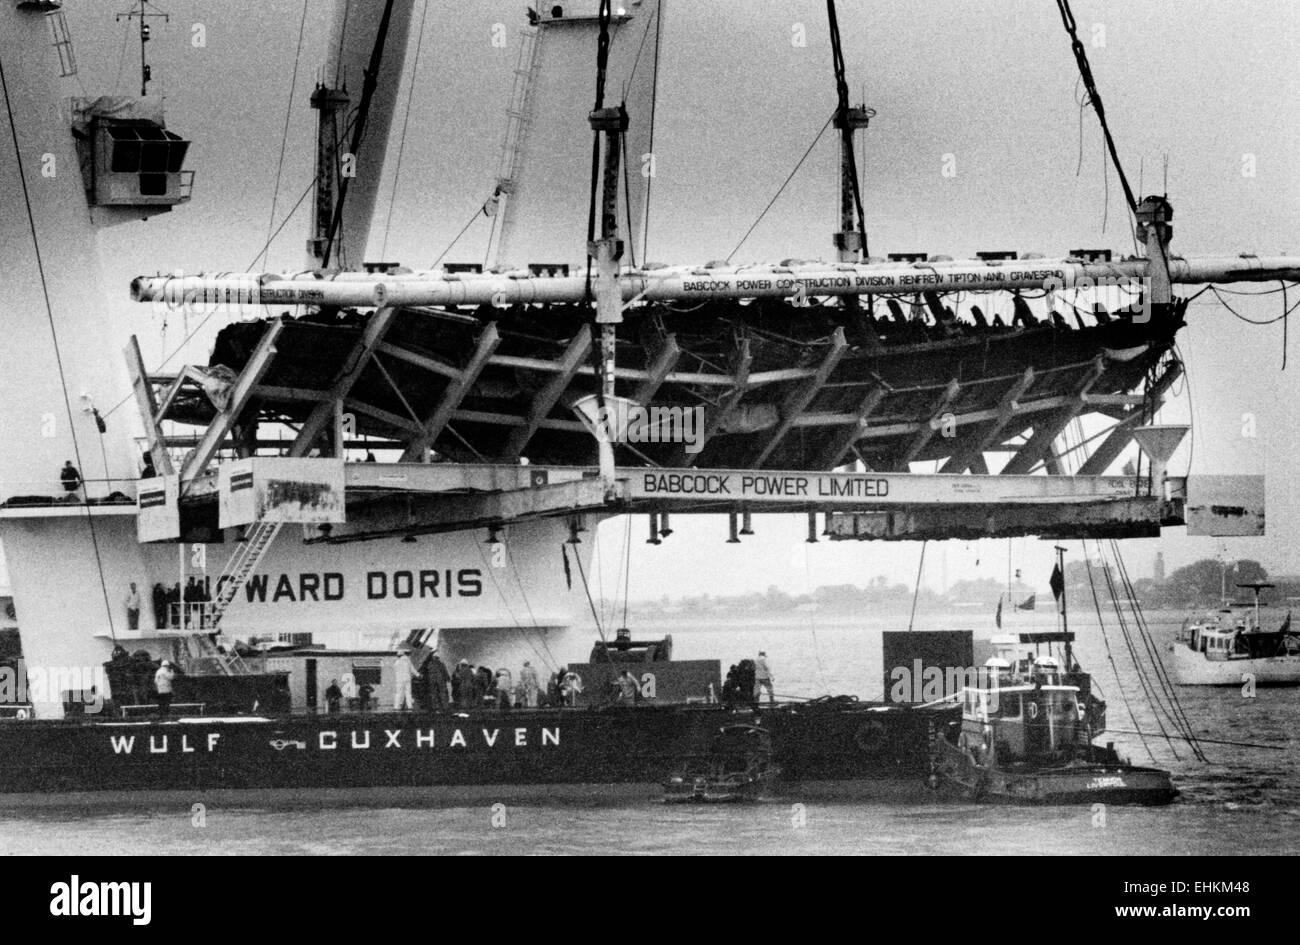 AJAXNETPHOTO. 12 DE OCTUBRE,1982. SOLENT, Inglaterra - Tudor naufragio - los frágiles RESTOS DEL BUQUE TUDOR Mary Rose hundido en 1545 se ha bajado en su soporte especial en una barcaza por la grúa de elevación pesada HOWARD DORIS TOG MOR. Foto:COLIN JARMAN/AJAX. REF:CD21207/1/102. HD SHI MARY Rose 003. Foto de stock